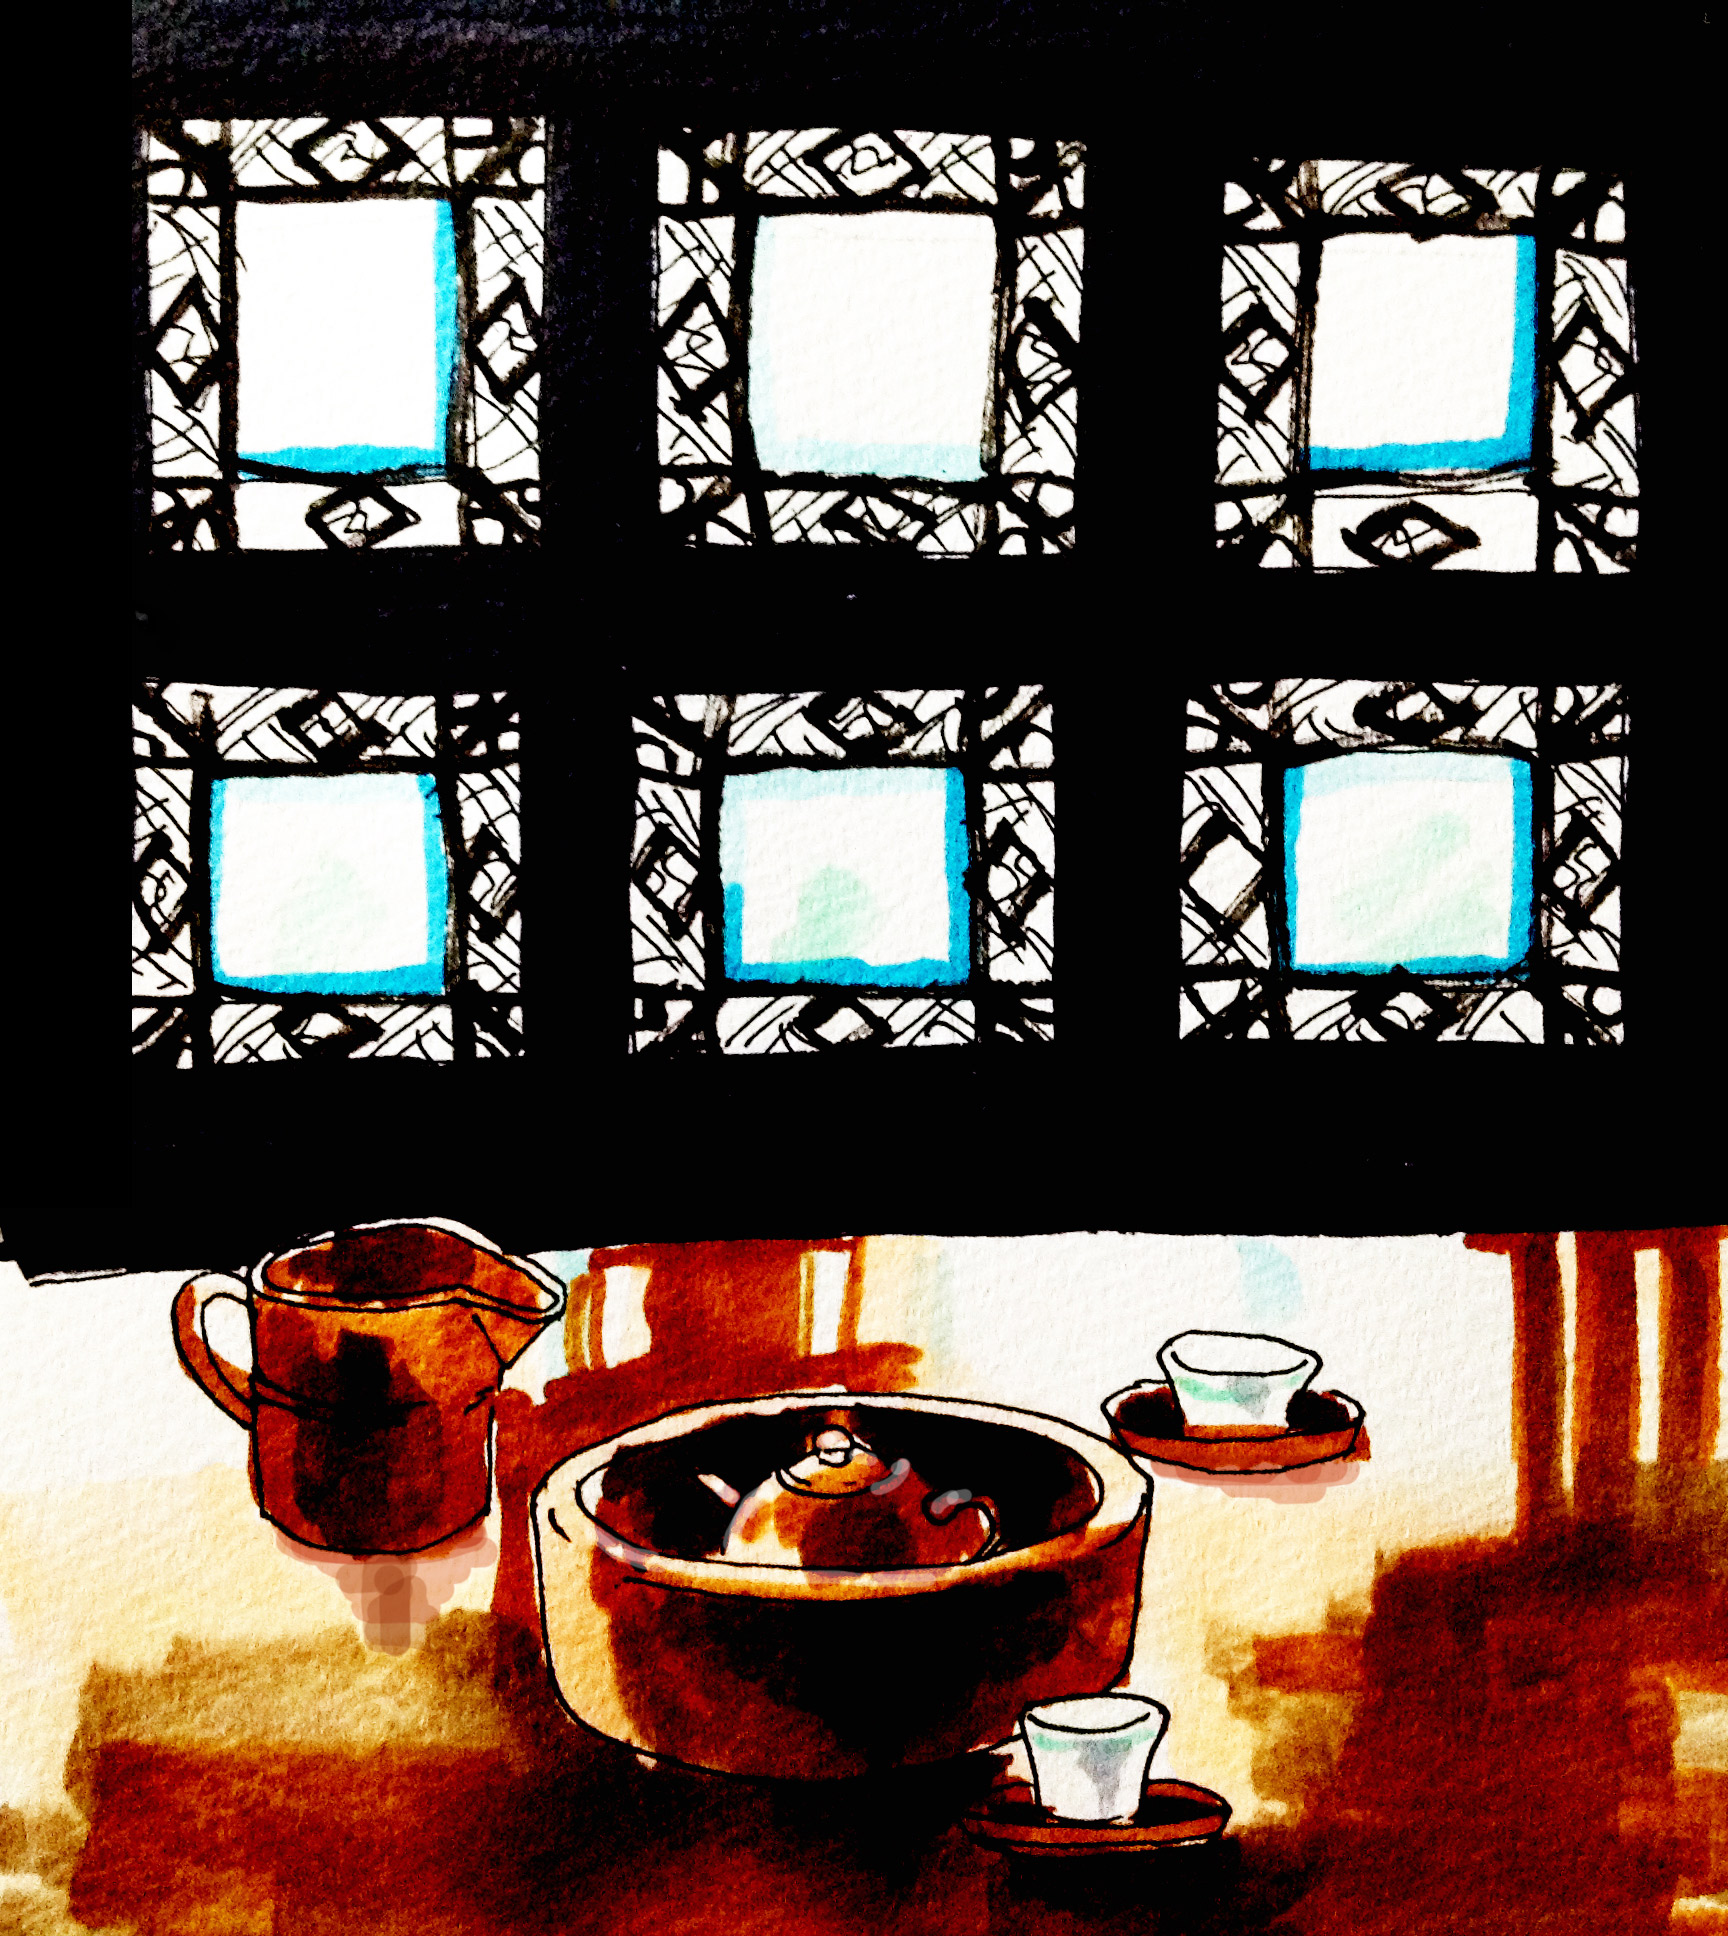 茶館で中国茶を飲む風景をコピックマーカーを使って描いたイラスト